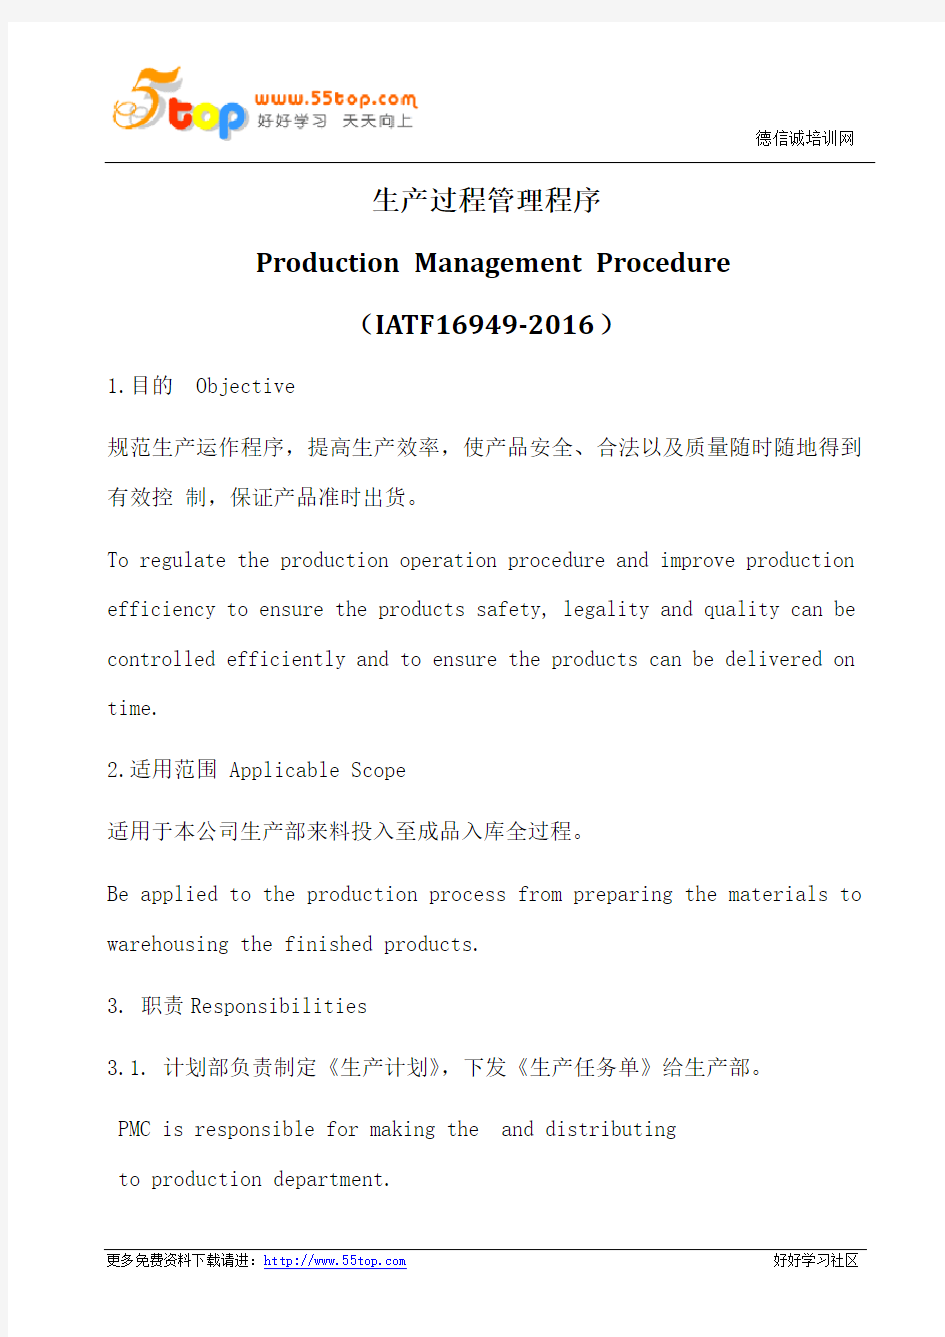 生产过程管理程序(中英文)